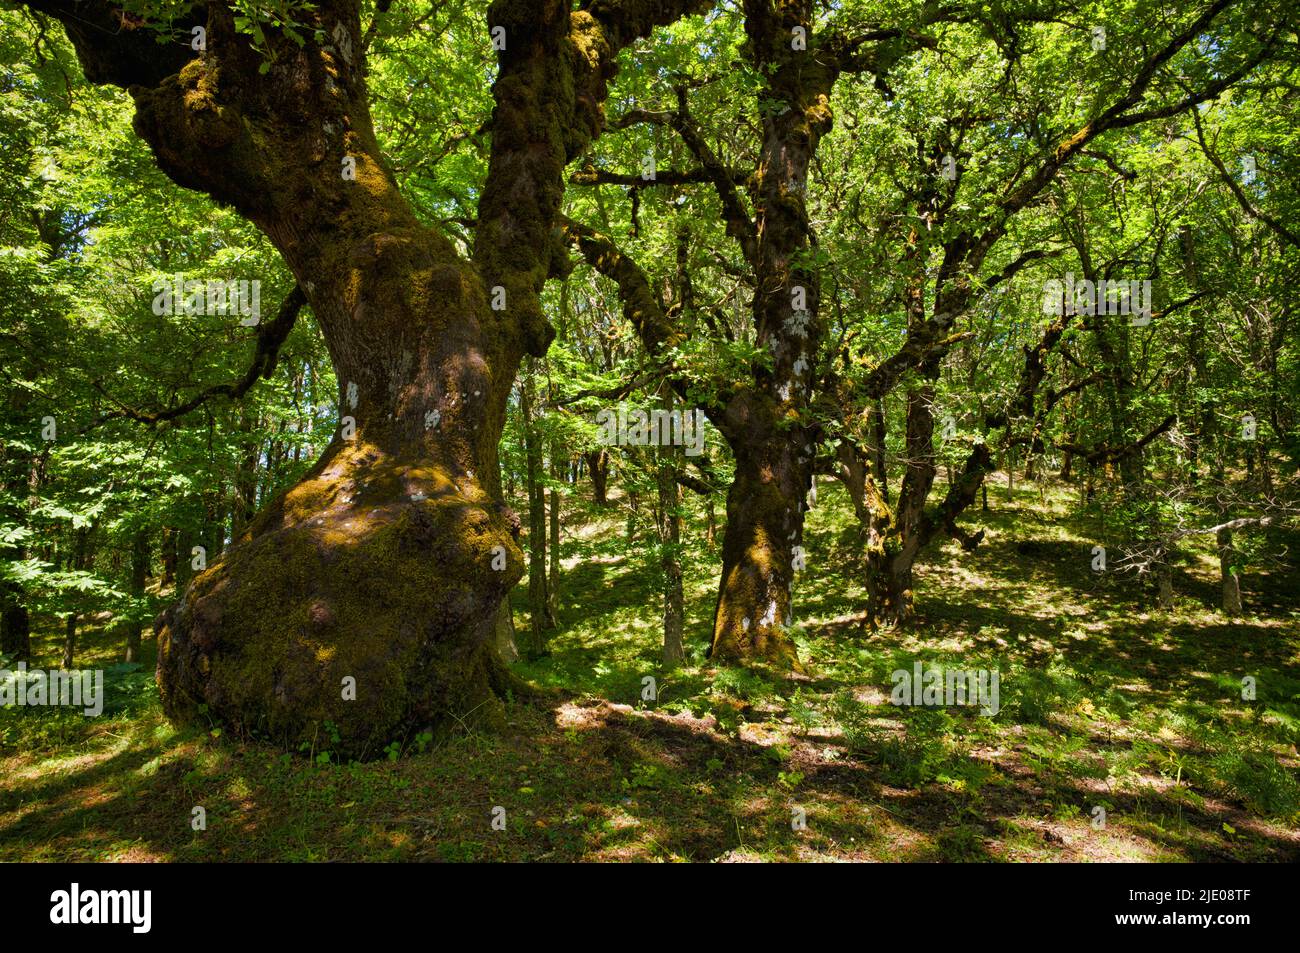 Stone oaks in the Riserva Naturale Orientata Bosco di Malabotta, holm oaks (Quercus ilex) Sicily, Italy Stock Photo